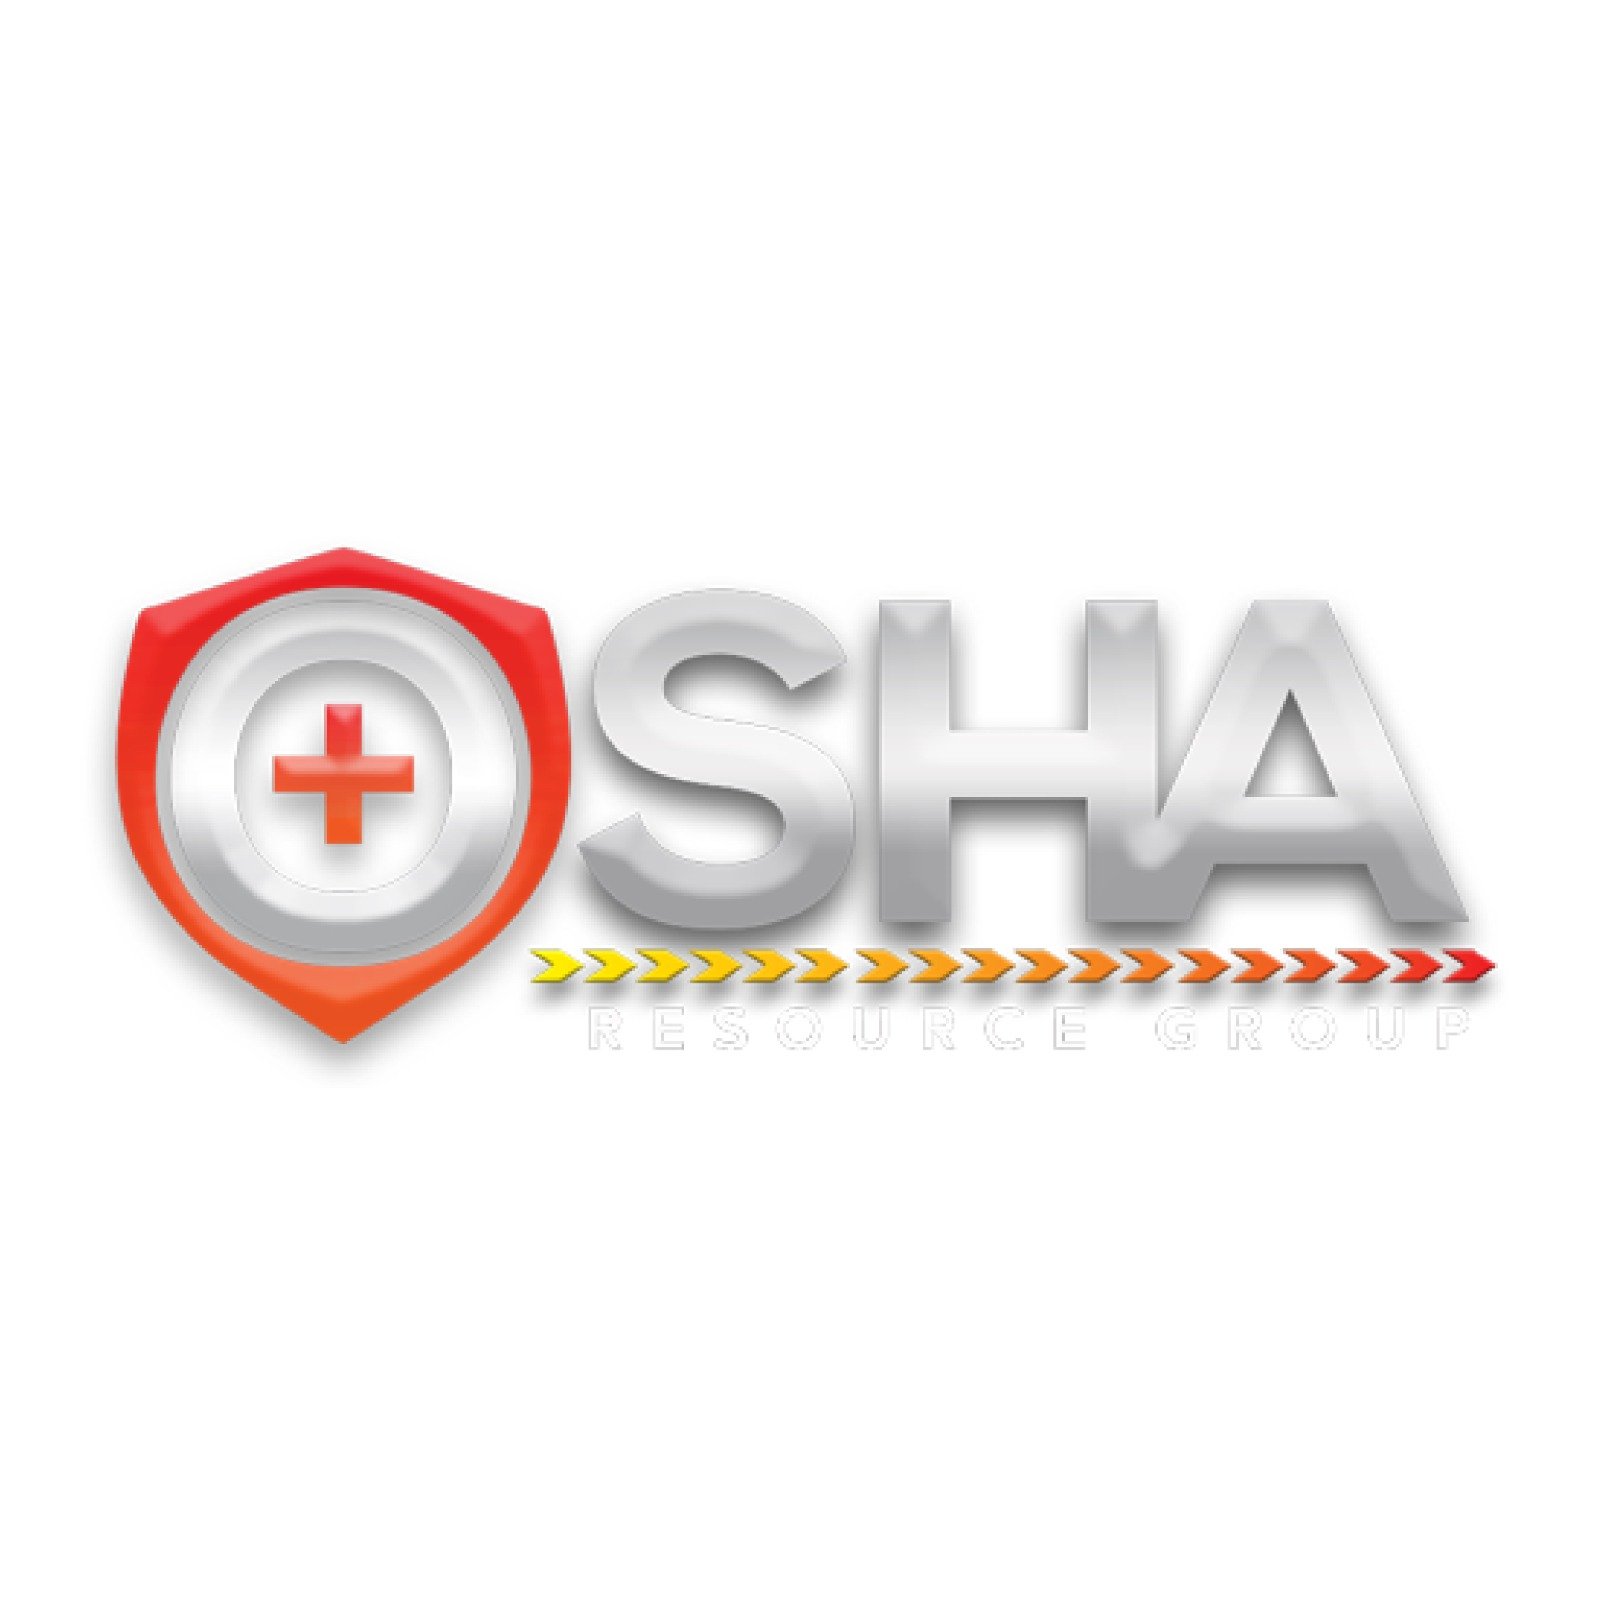 Osha Resource Group logo